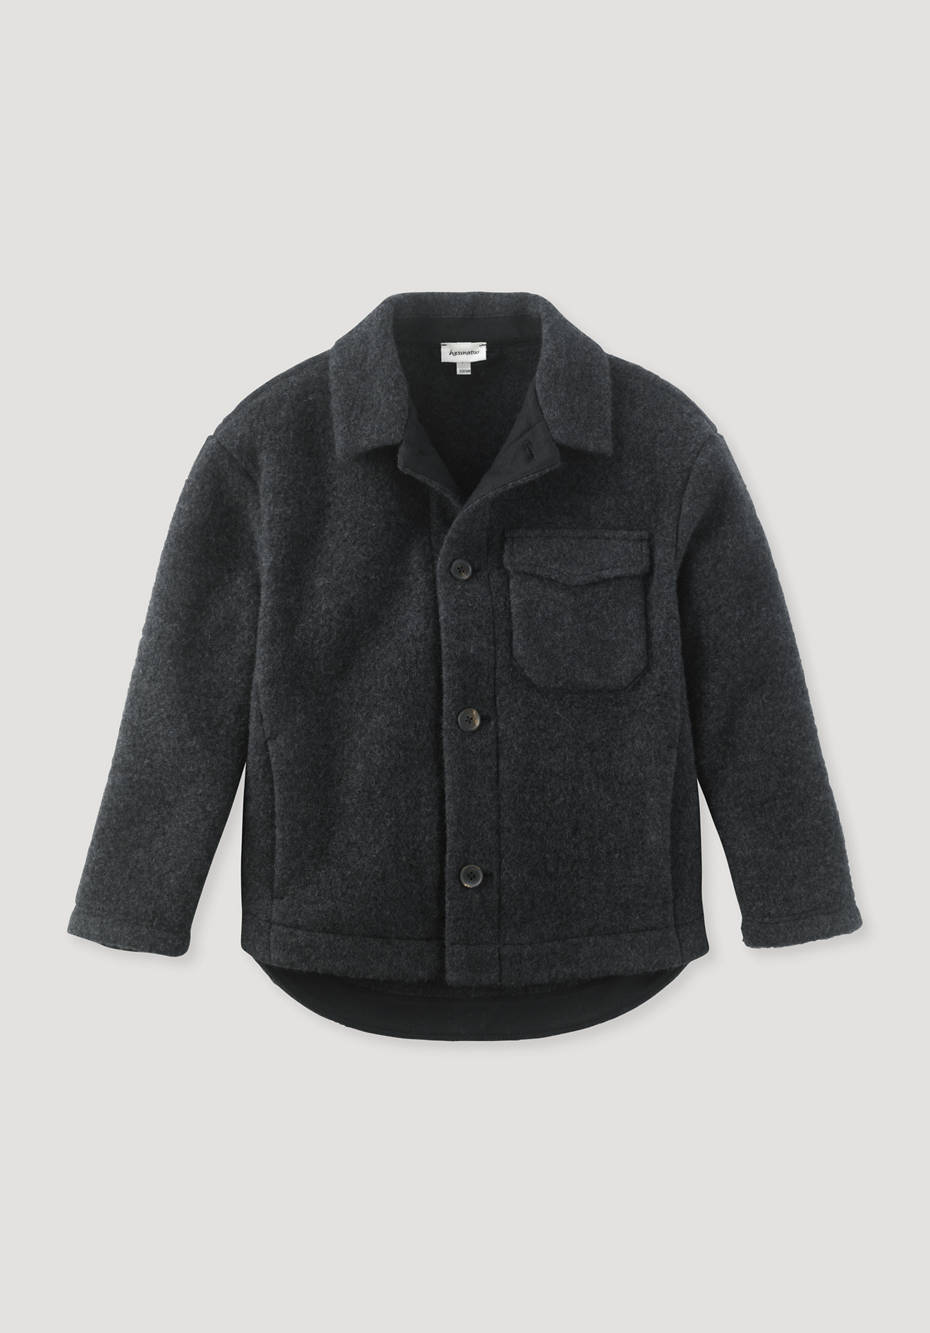 Wool fleece overshirt made from pure organic merino wool